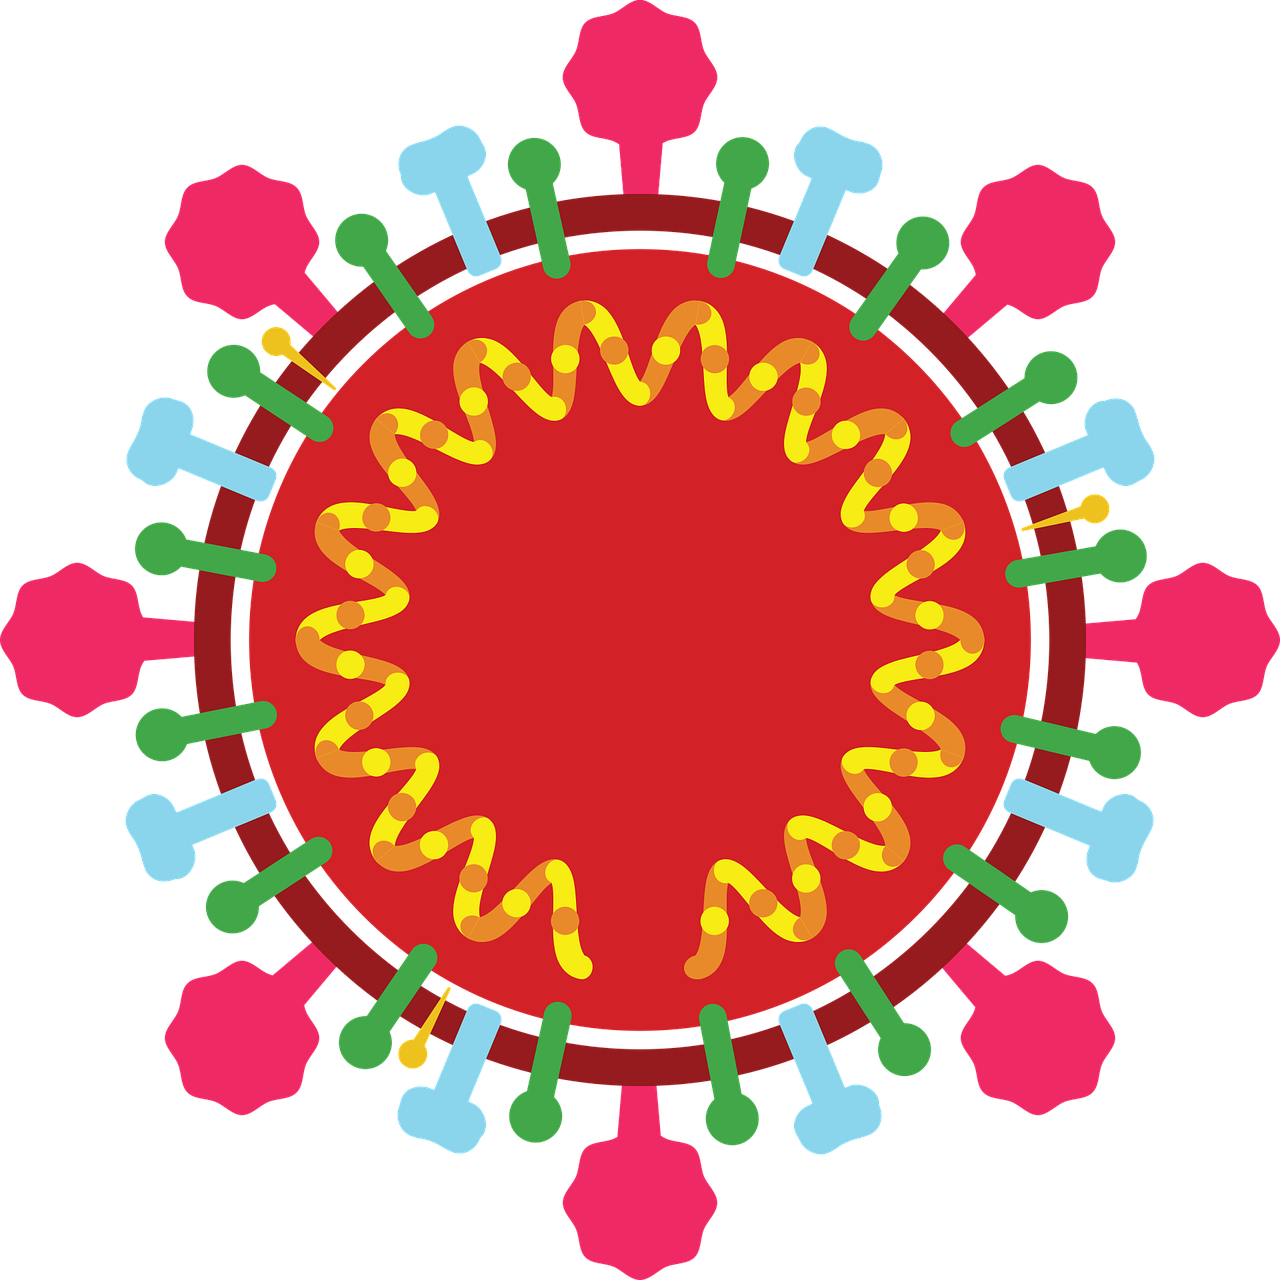 新型冠状病毒感染的<font color="red">肺炎</font>影像学诊断指南(2020第一版)